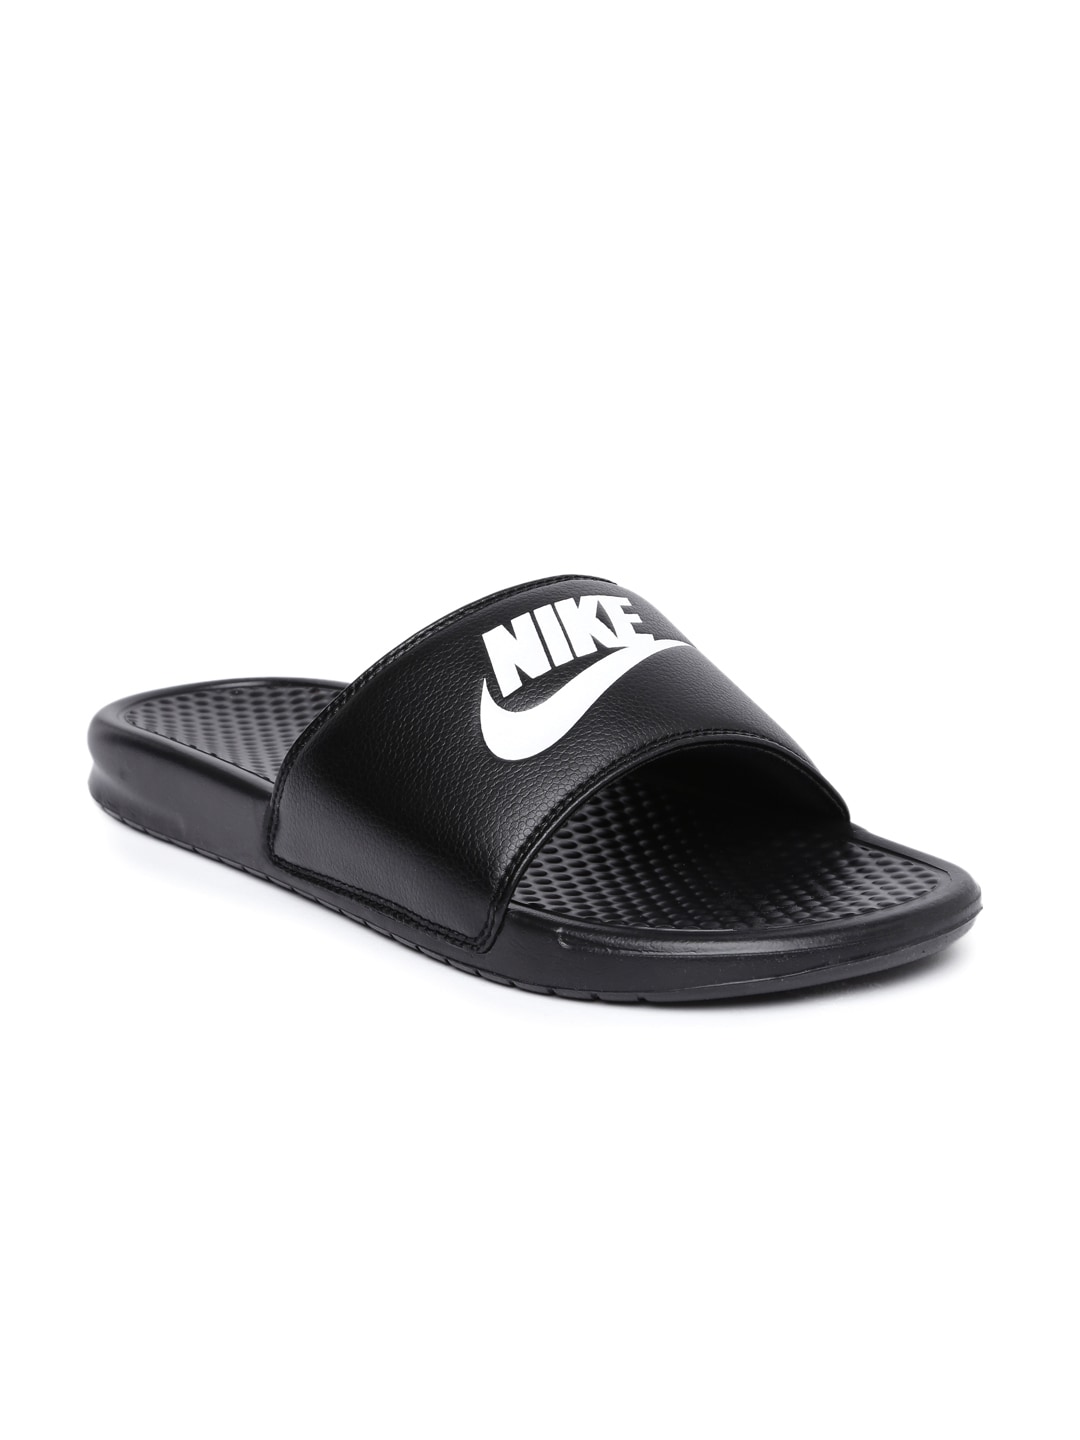 black nike flip flops